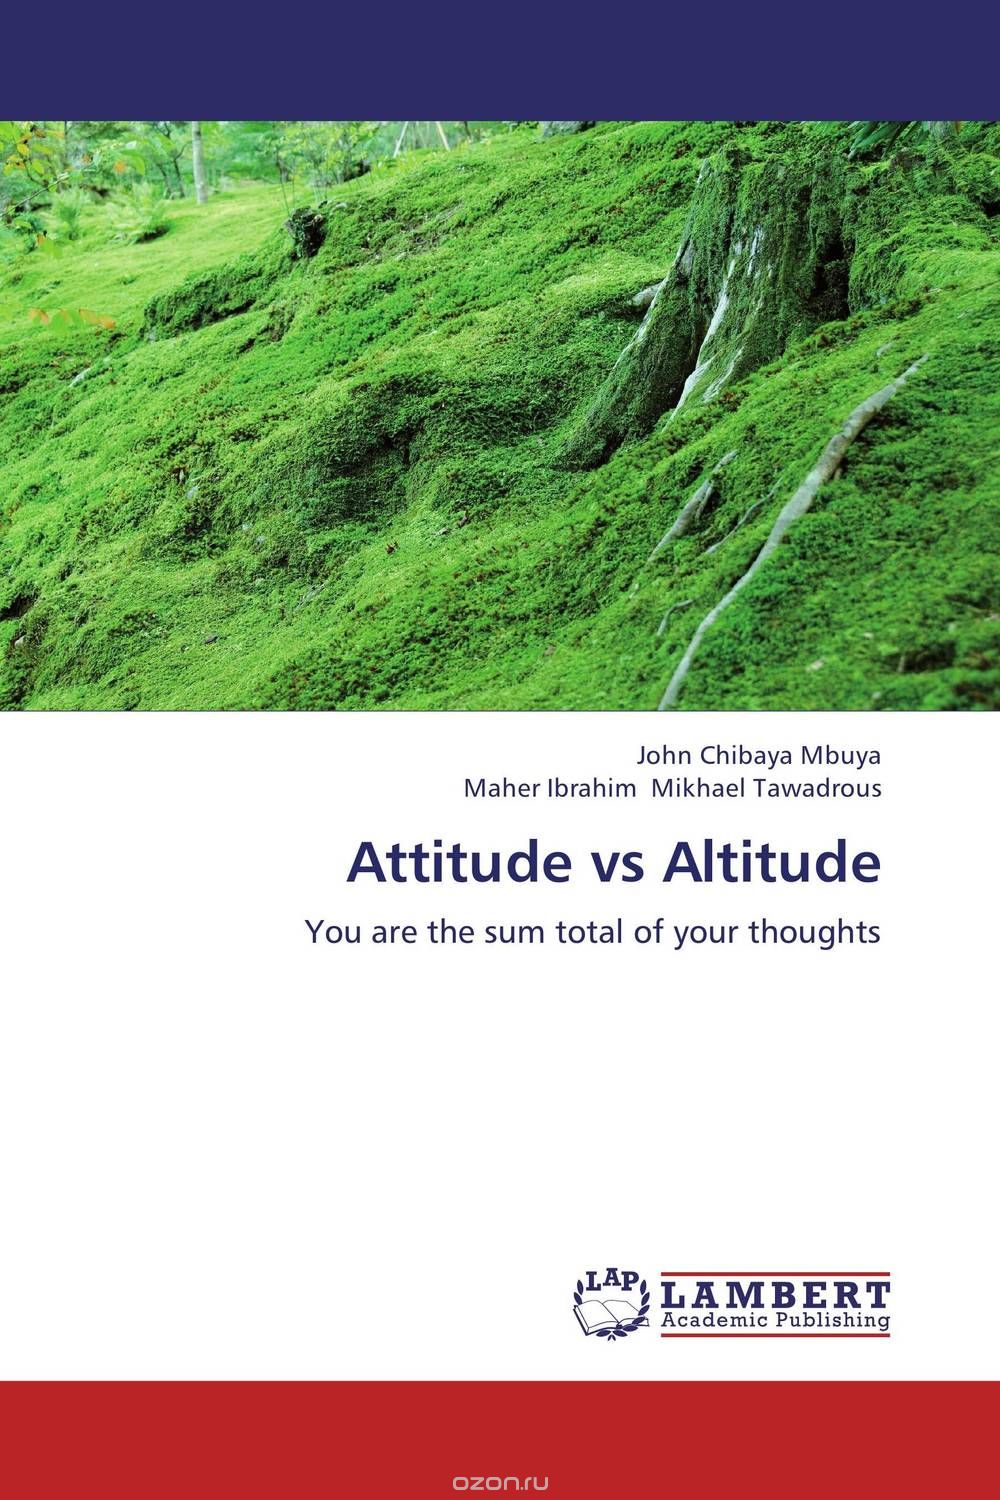 Скачать книгу "Attitude vs Altitude"